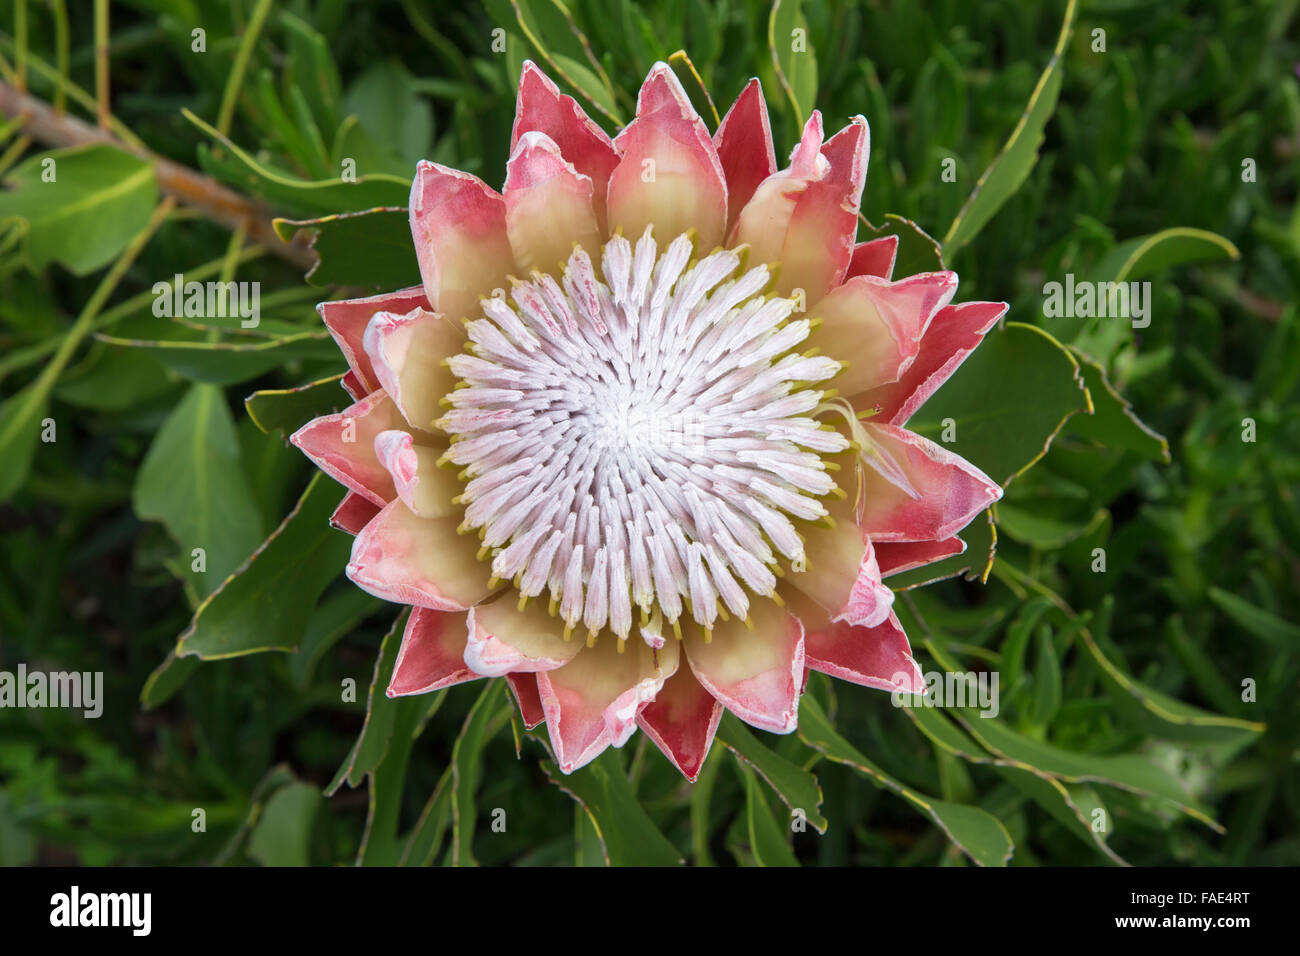 King protea (Protea cynaroides), Kirstenbosch botanical gardens, Cape Town, South Africa Stock Photo